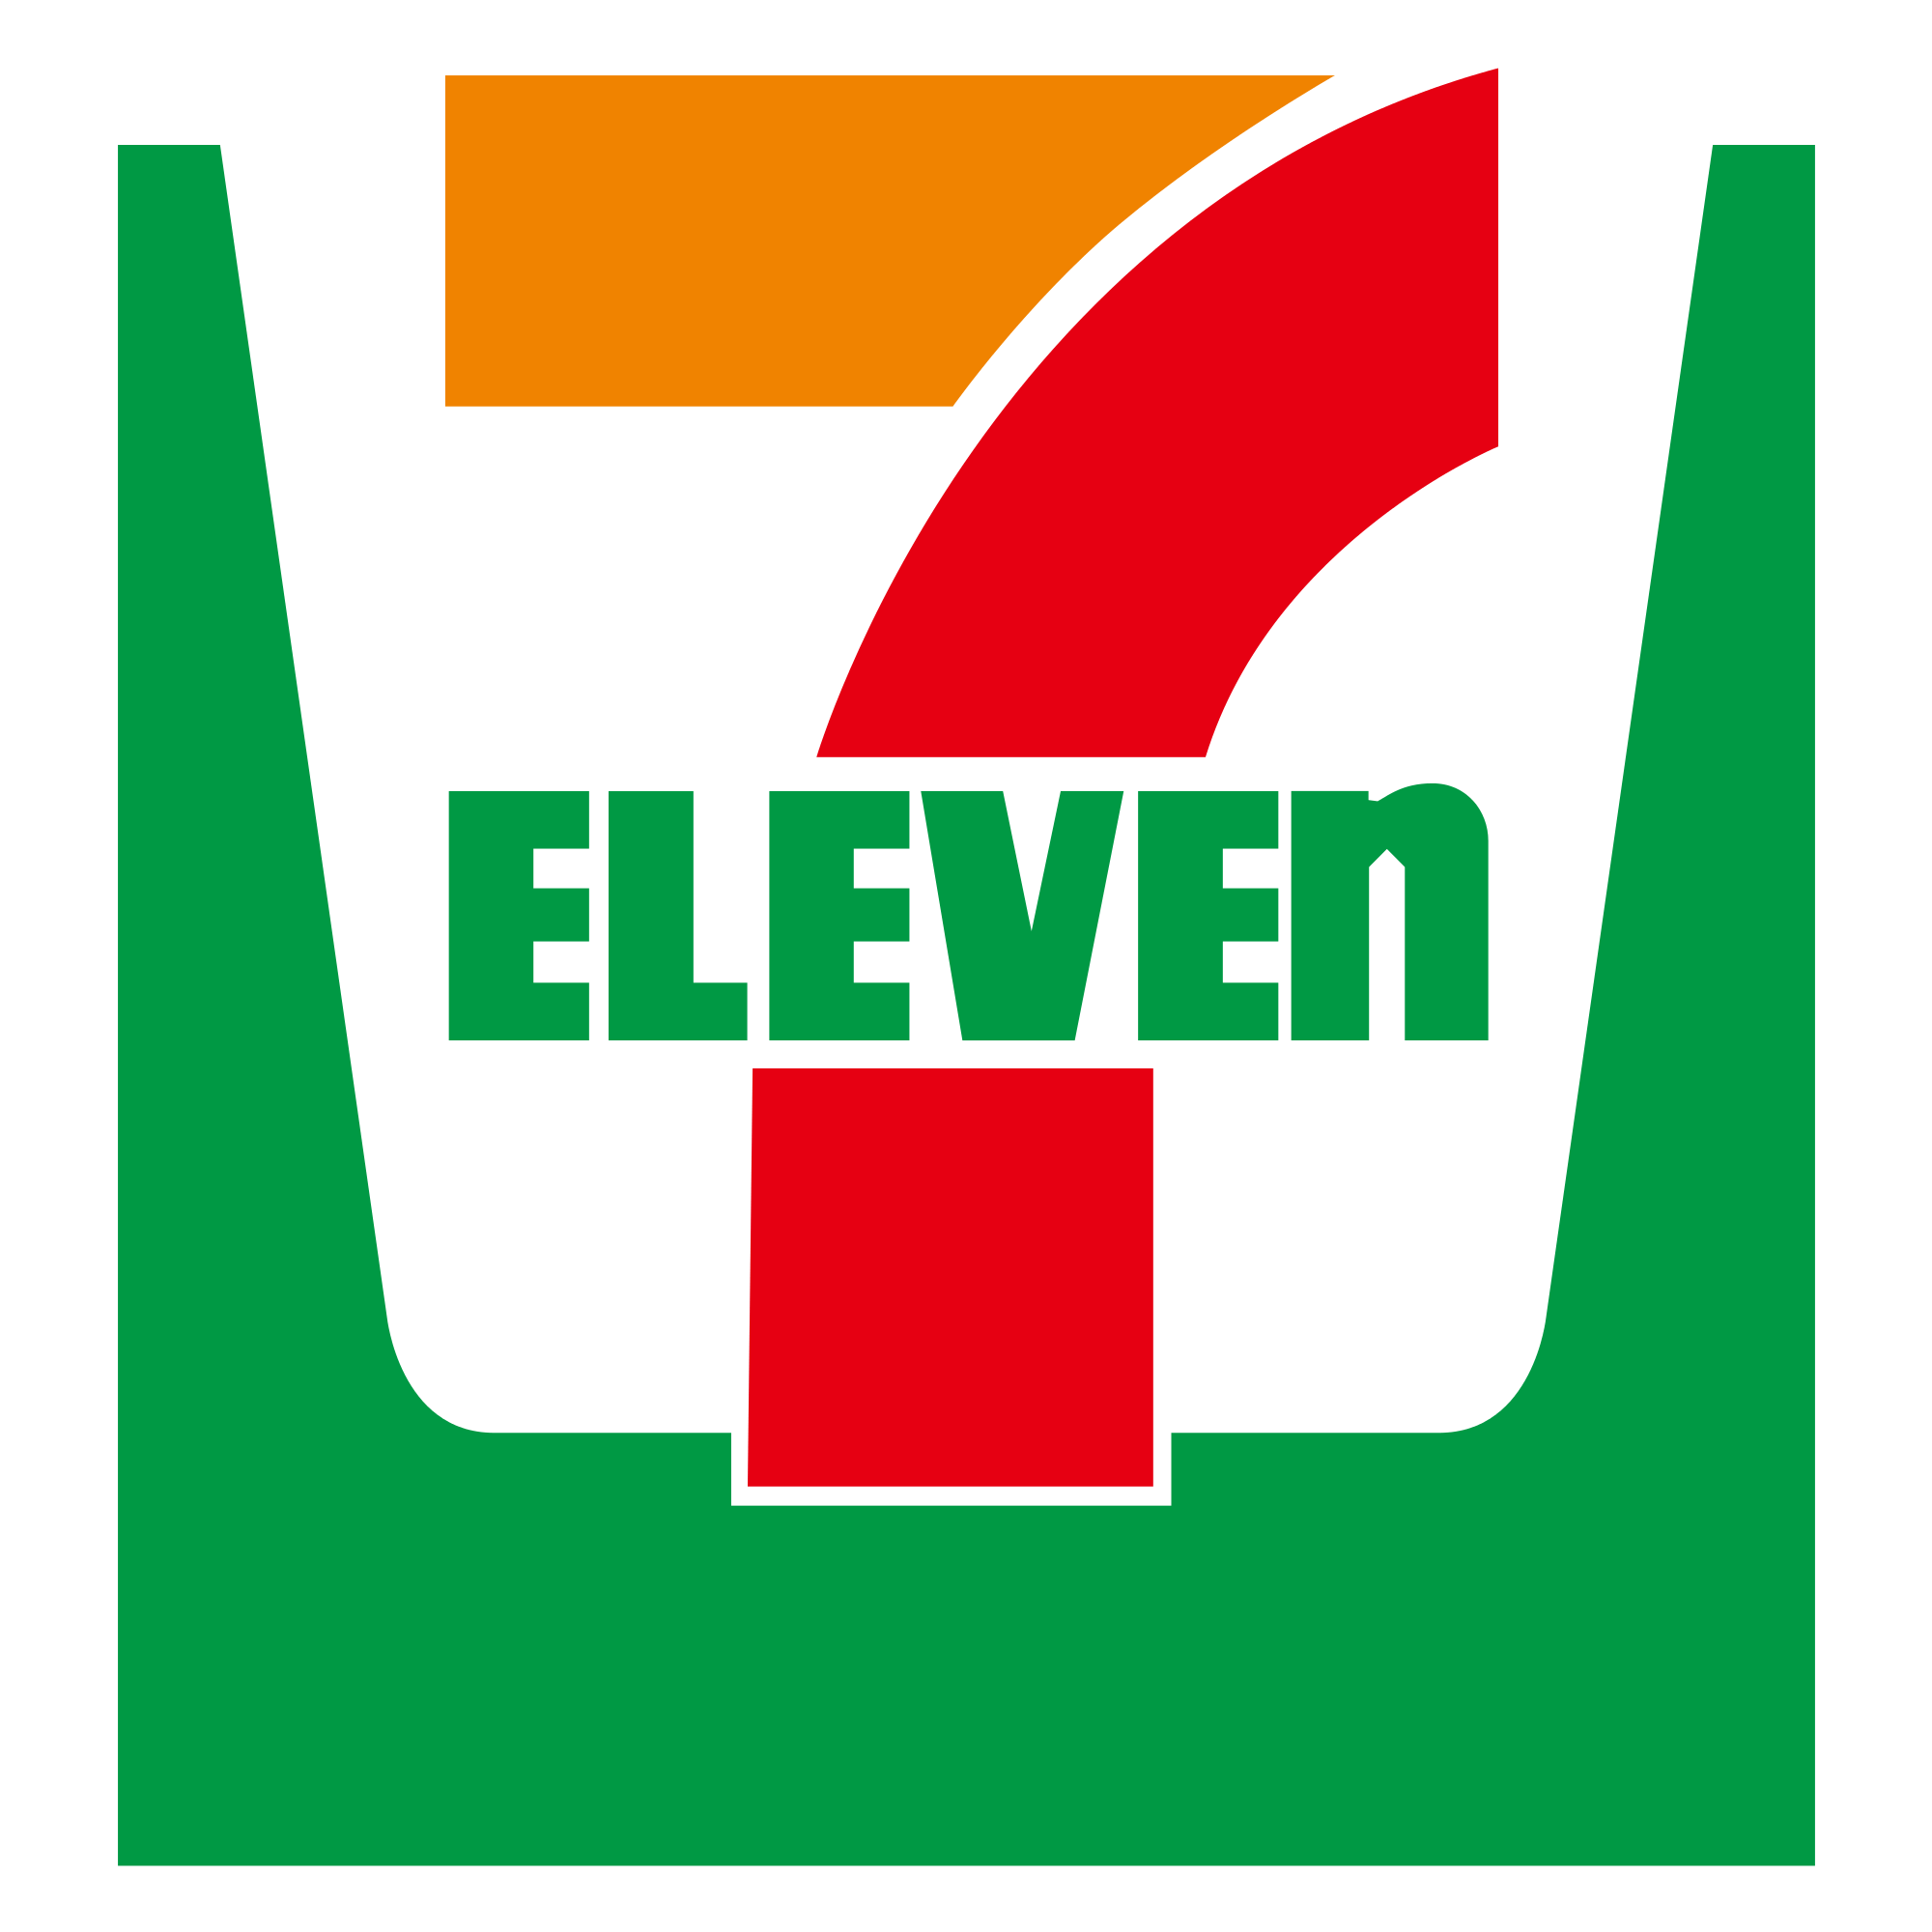 7-Eleven Logo - File:Seven eleven logo.svg - Wikimedia Commons